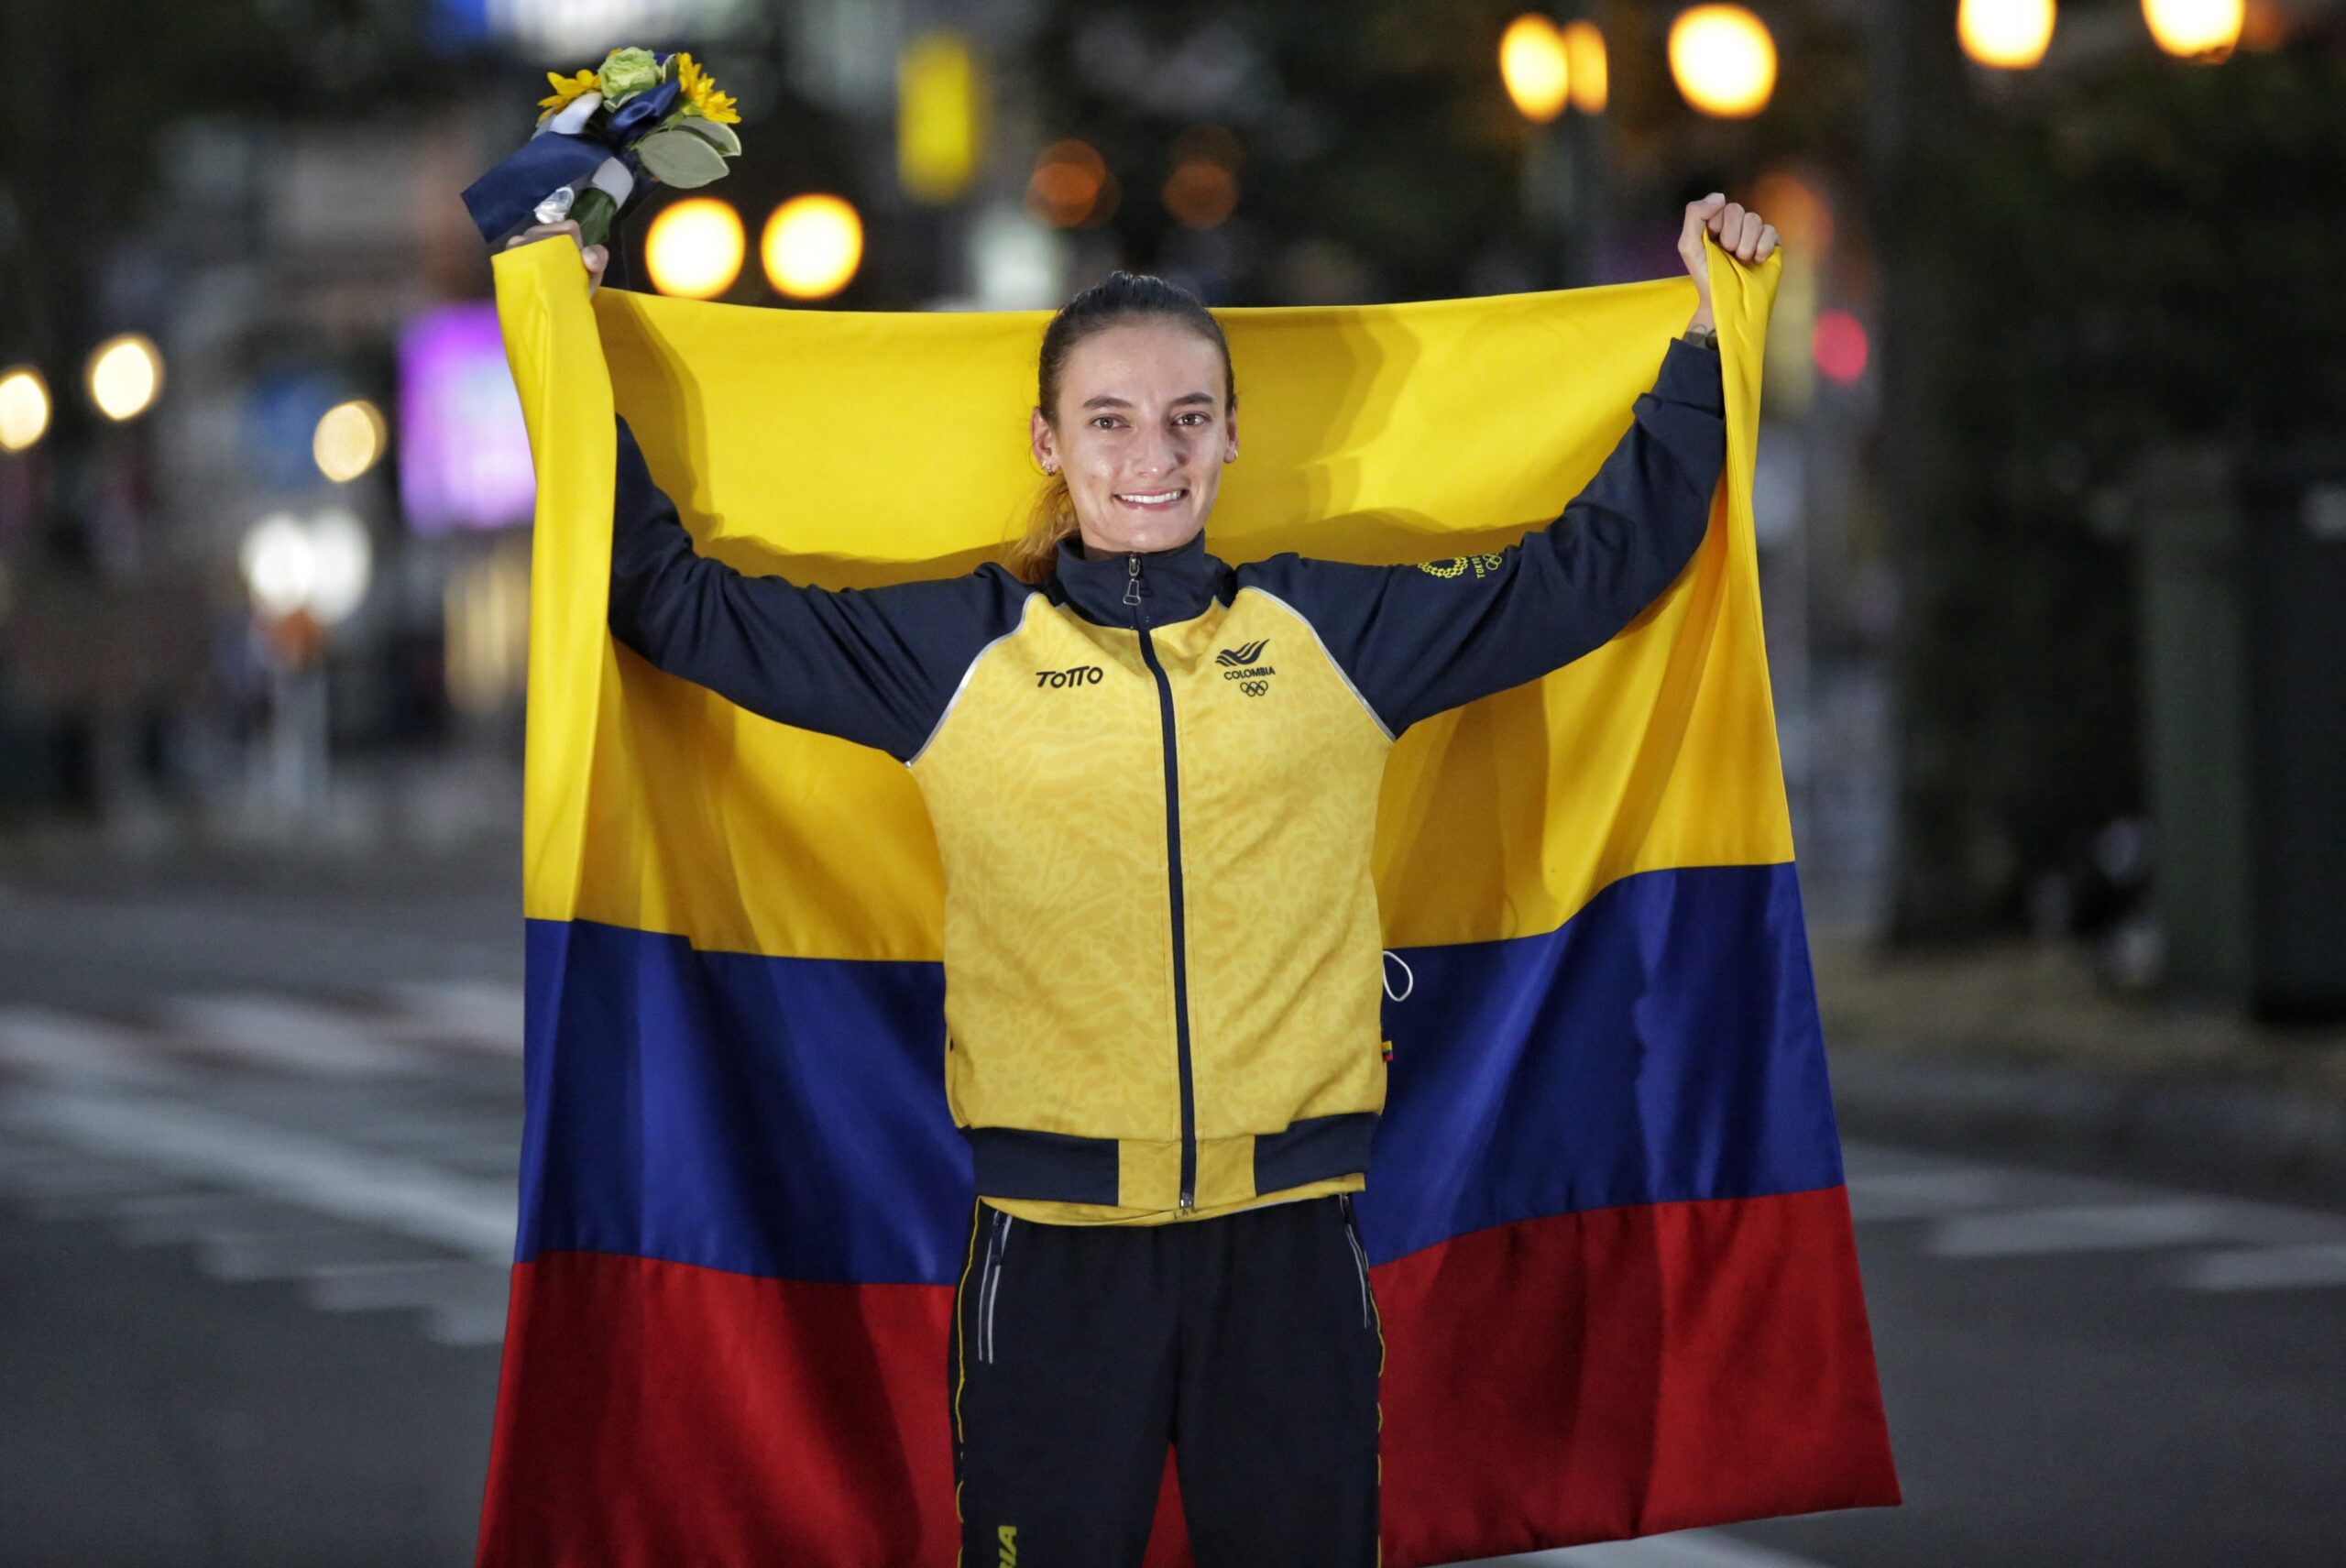 Marcha 20k: La colombiana Lorena Arenas gana la medalla de plata